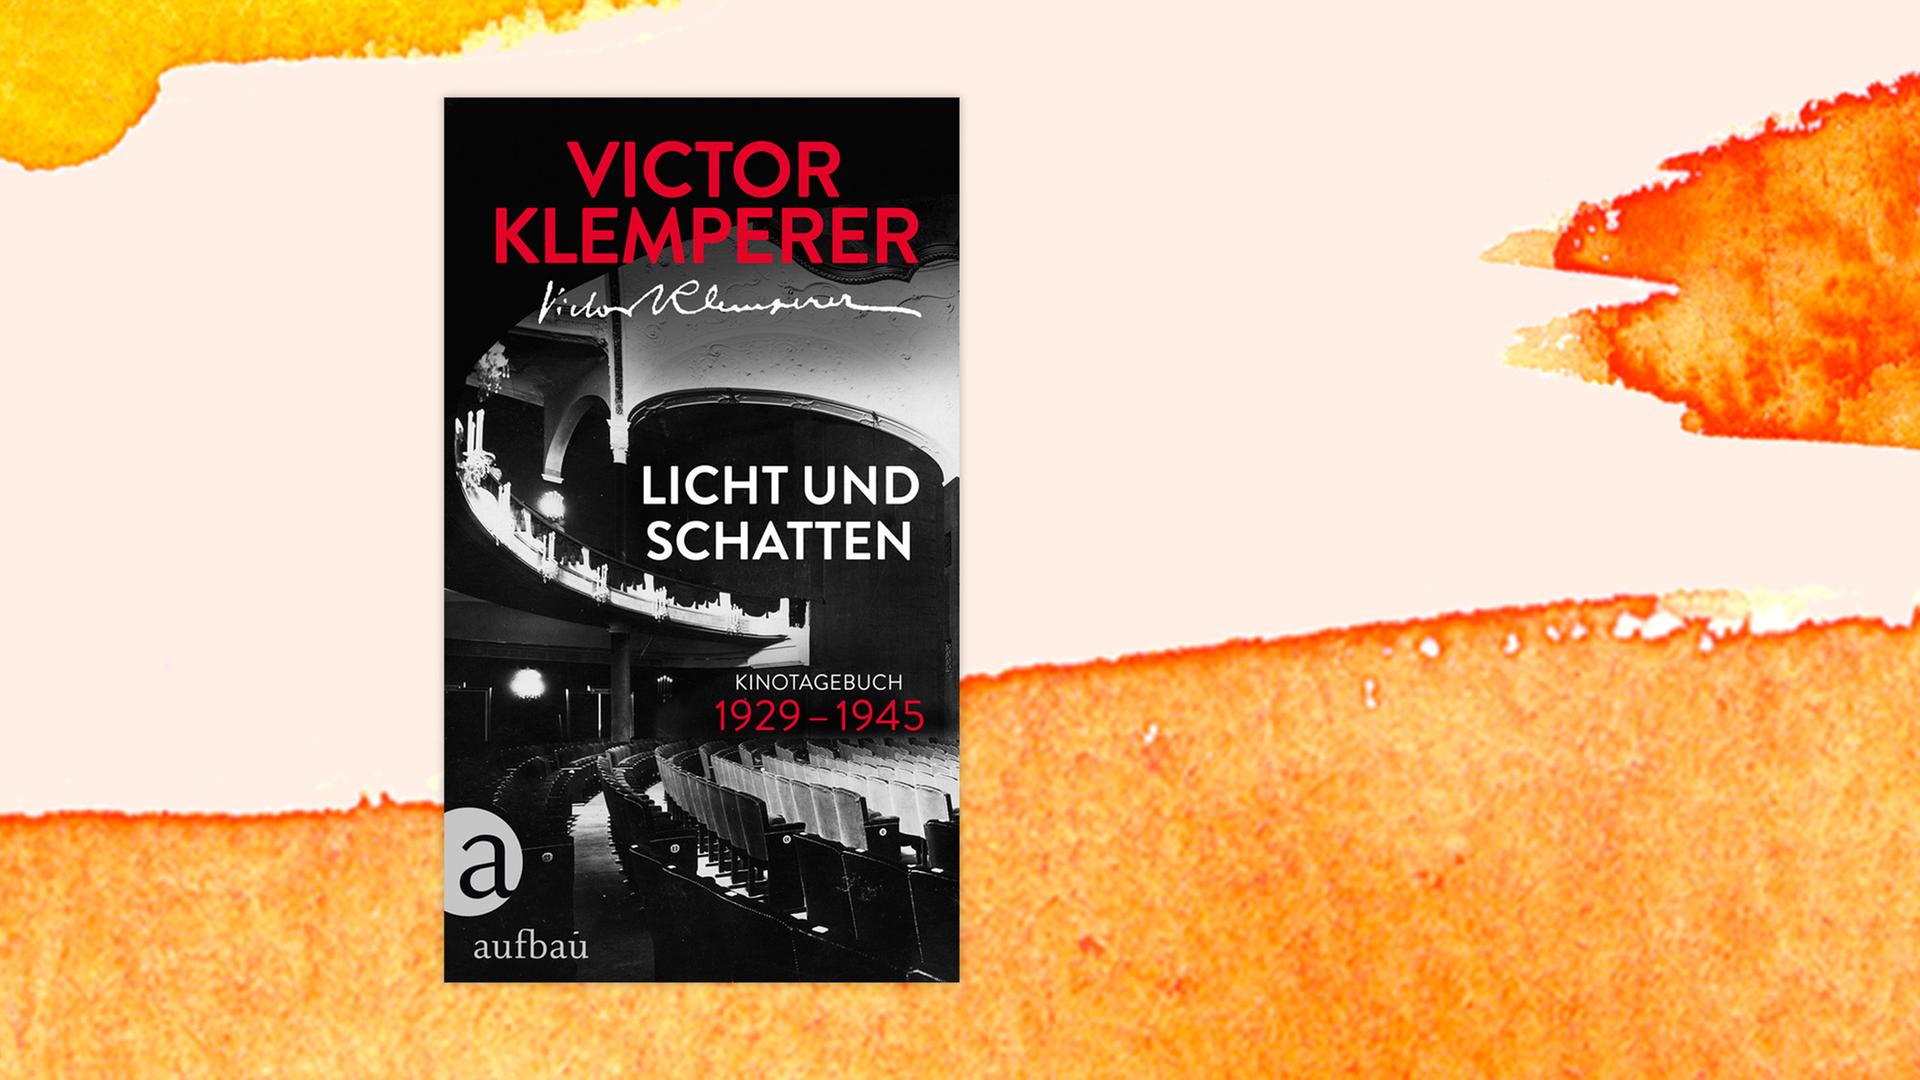 Victor Klemperer: "Licht und Schatten. Kinotagebuch"